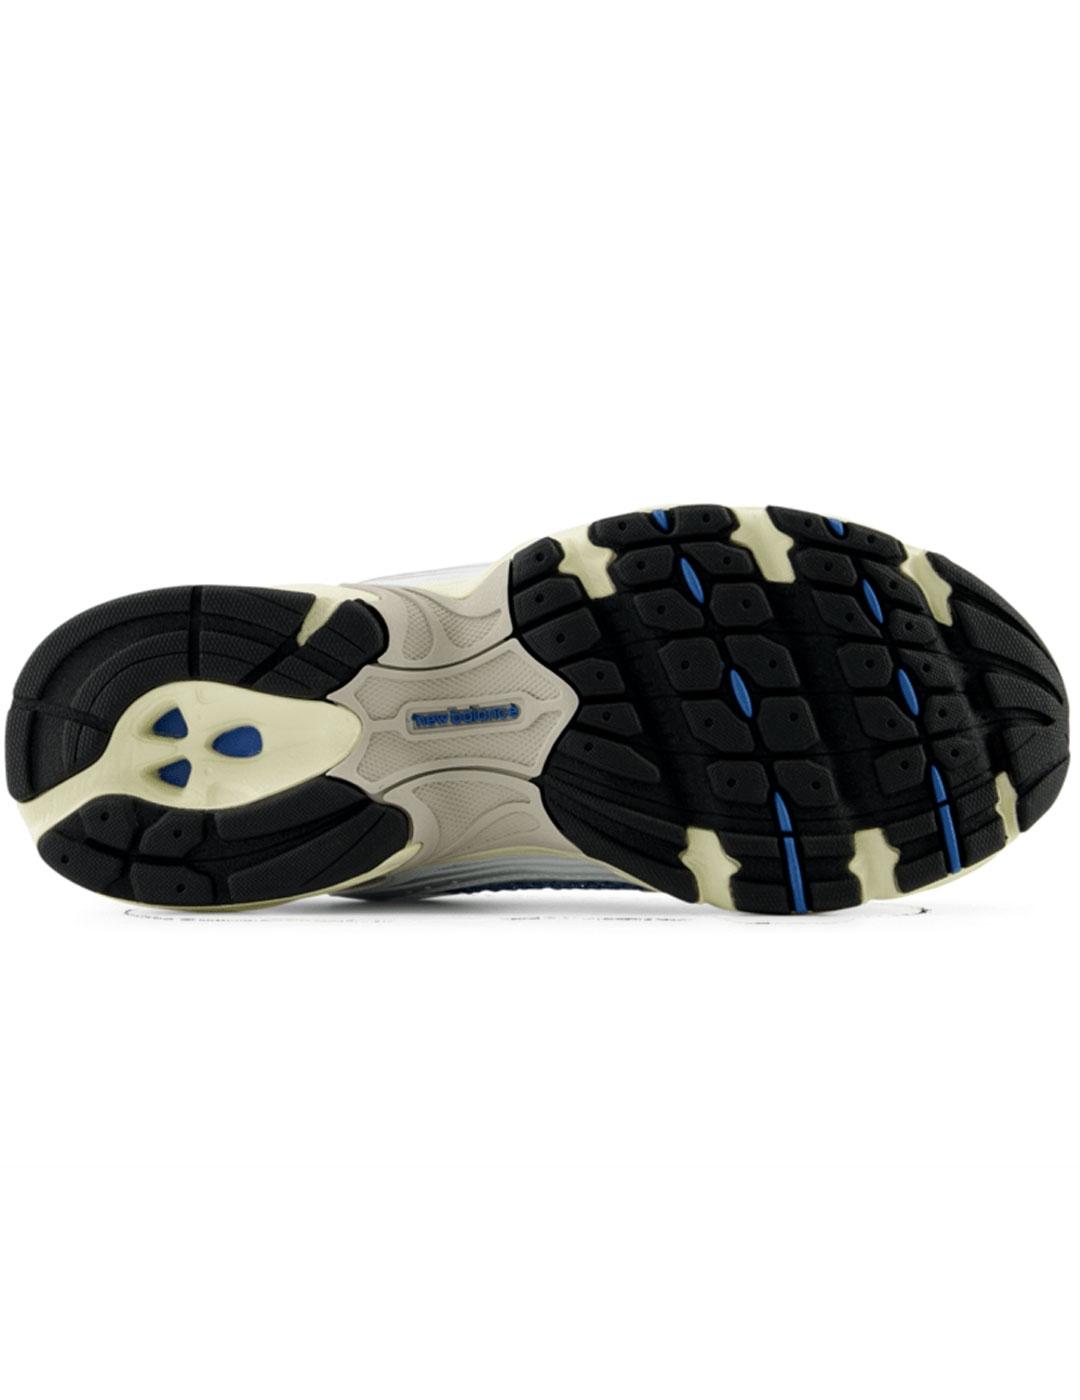 Zapatillas New Balance 530 blancas y azules